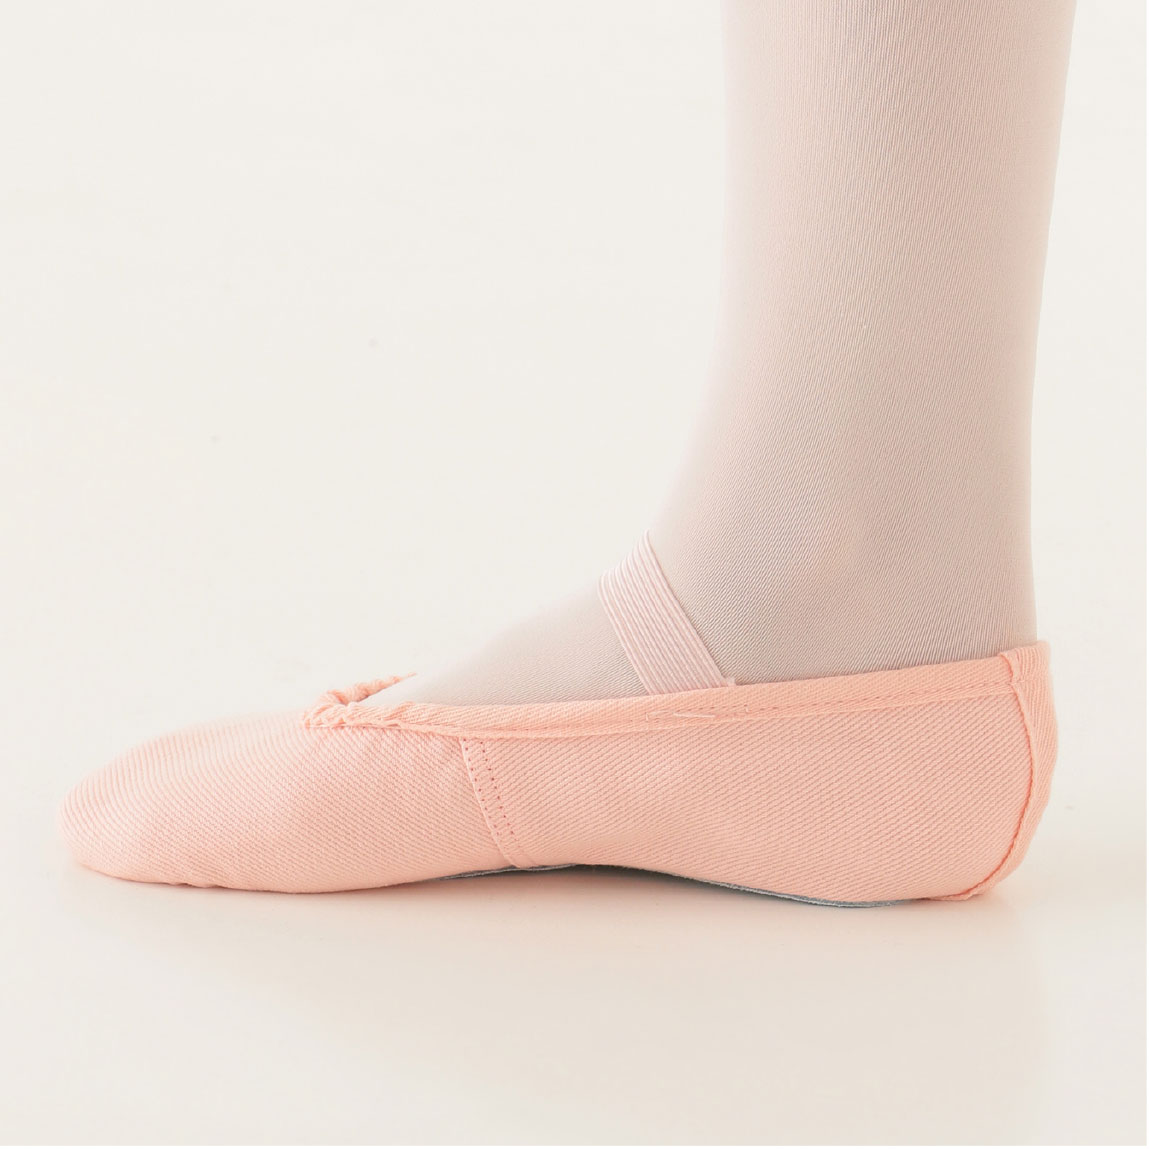 balletshoes_003.jpg